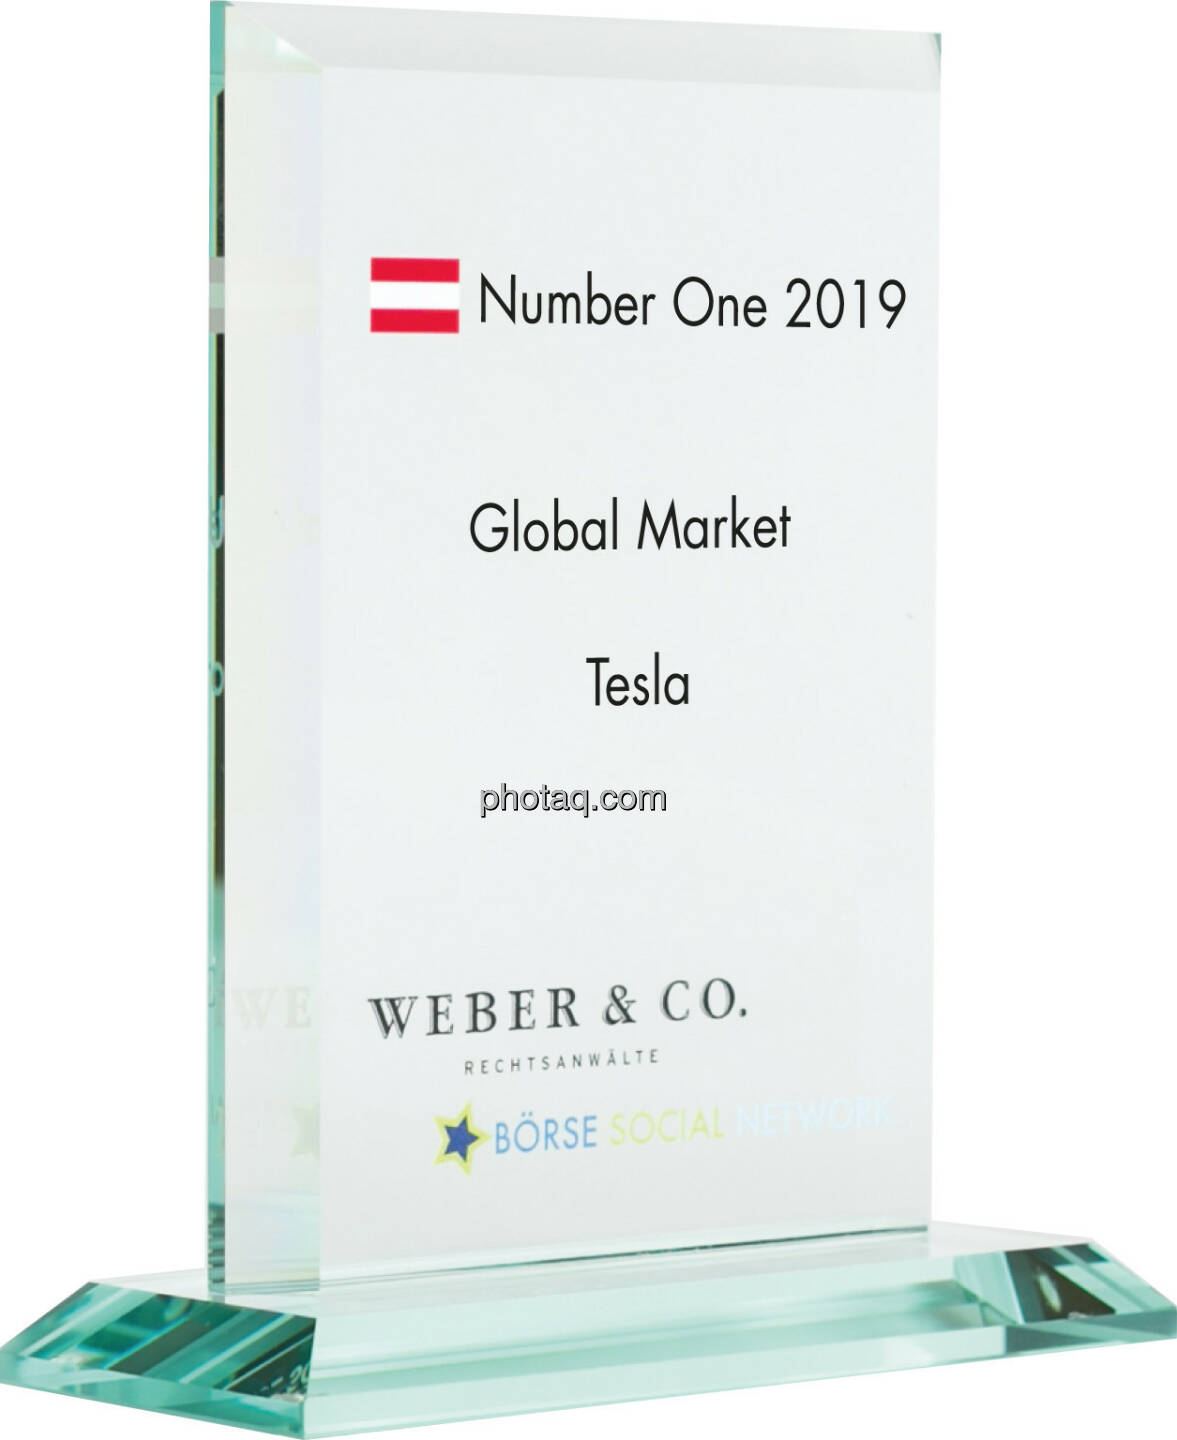 Number One Awards 2019 - Global Market Tesla